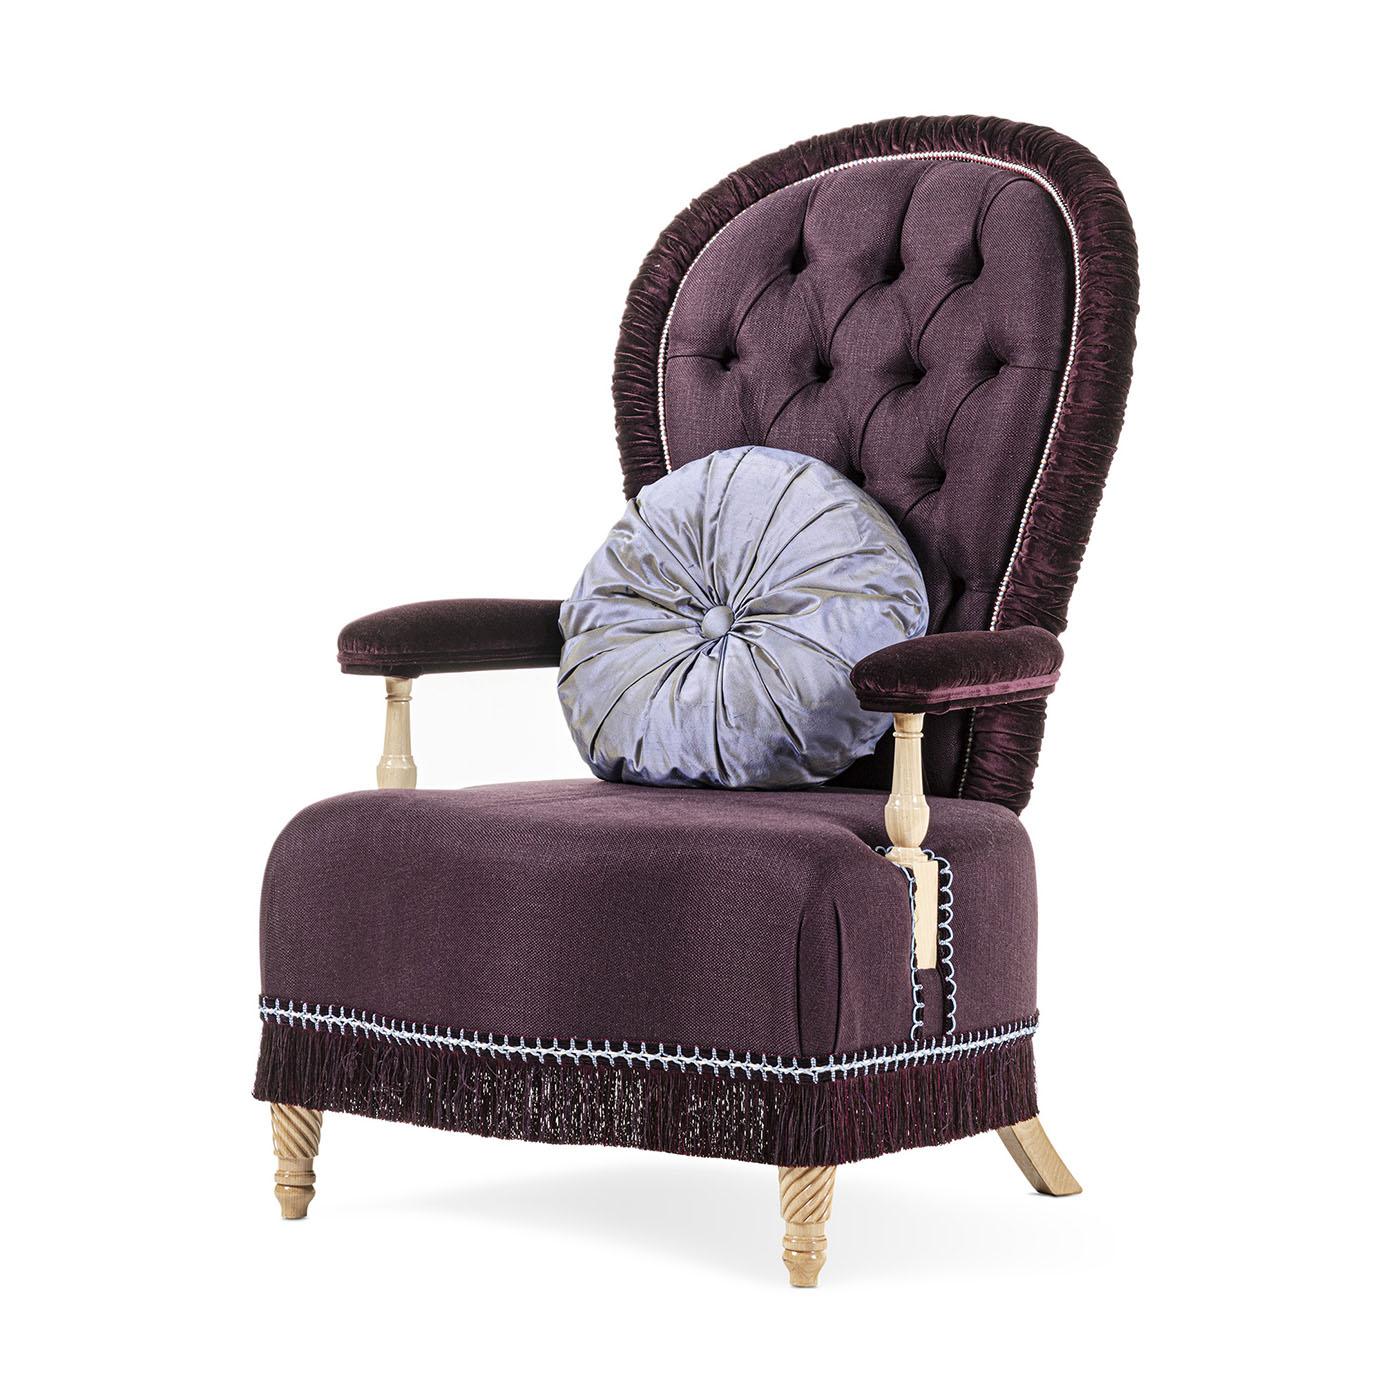 Ce fauteuil confortable est tapissé de lin et de velours avec une finition naturelle. Design/One dans sa douceur pour faire ressentir à chacun une sensation inestimable. Le coussin est inclus dans la photo.